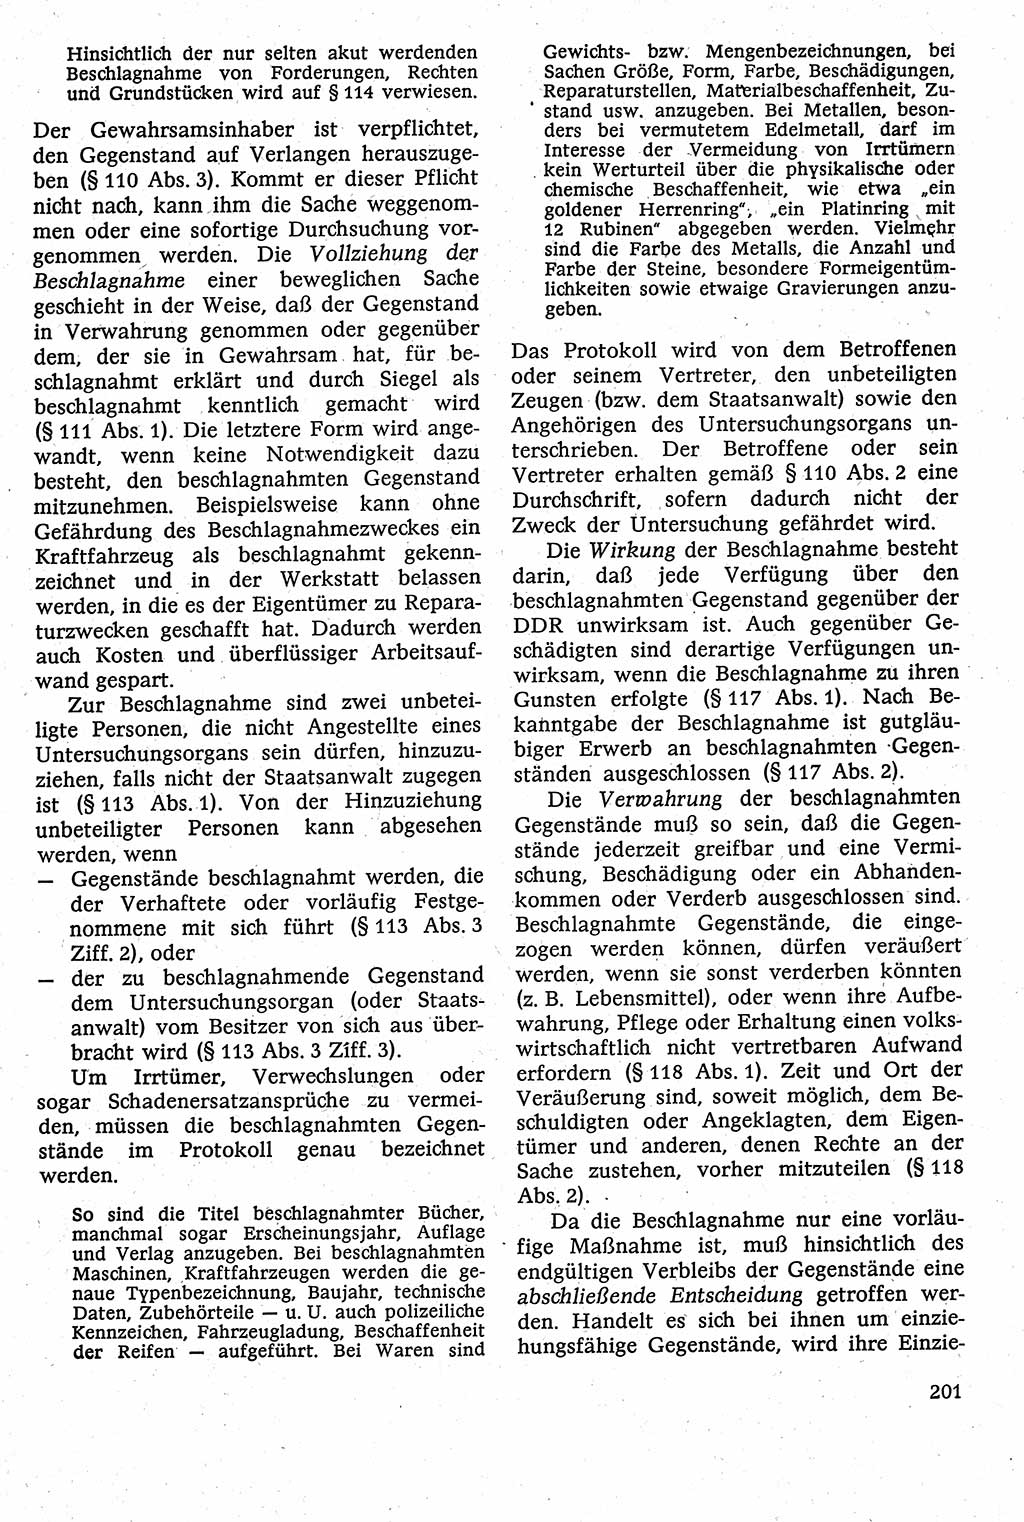 Strafverfahrensrecht [Deutsche Demokratische Republik (DDR)], Lehrbuch 1982, Seite 201 (Strafverf.-R. DDR Lb. 1982, S. 201)